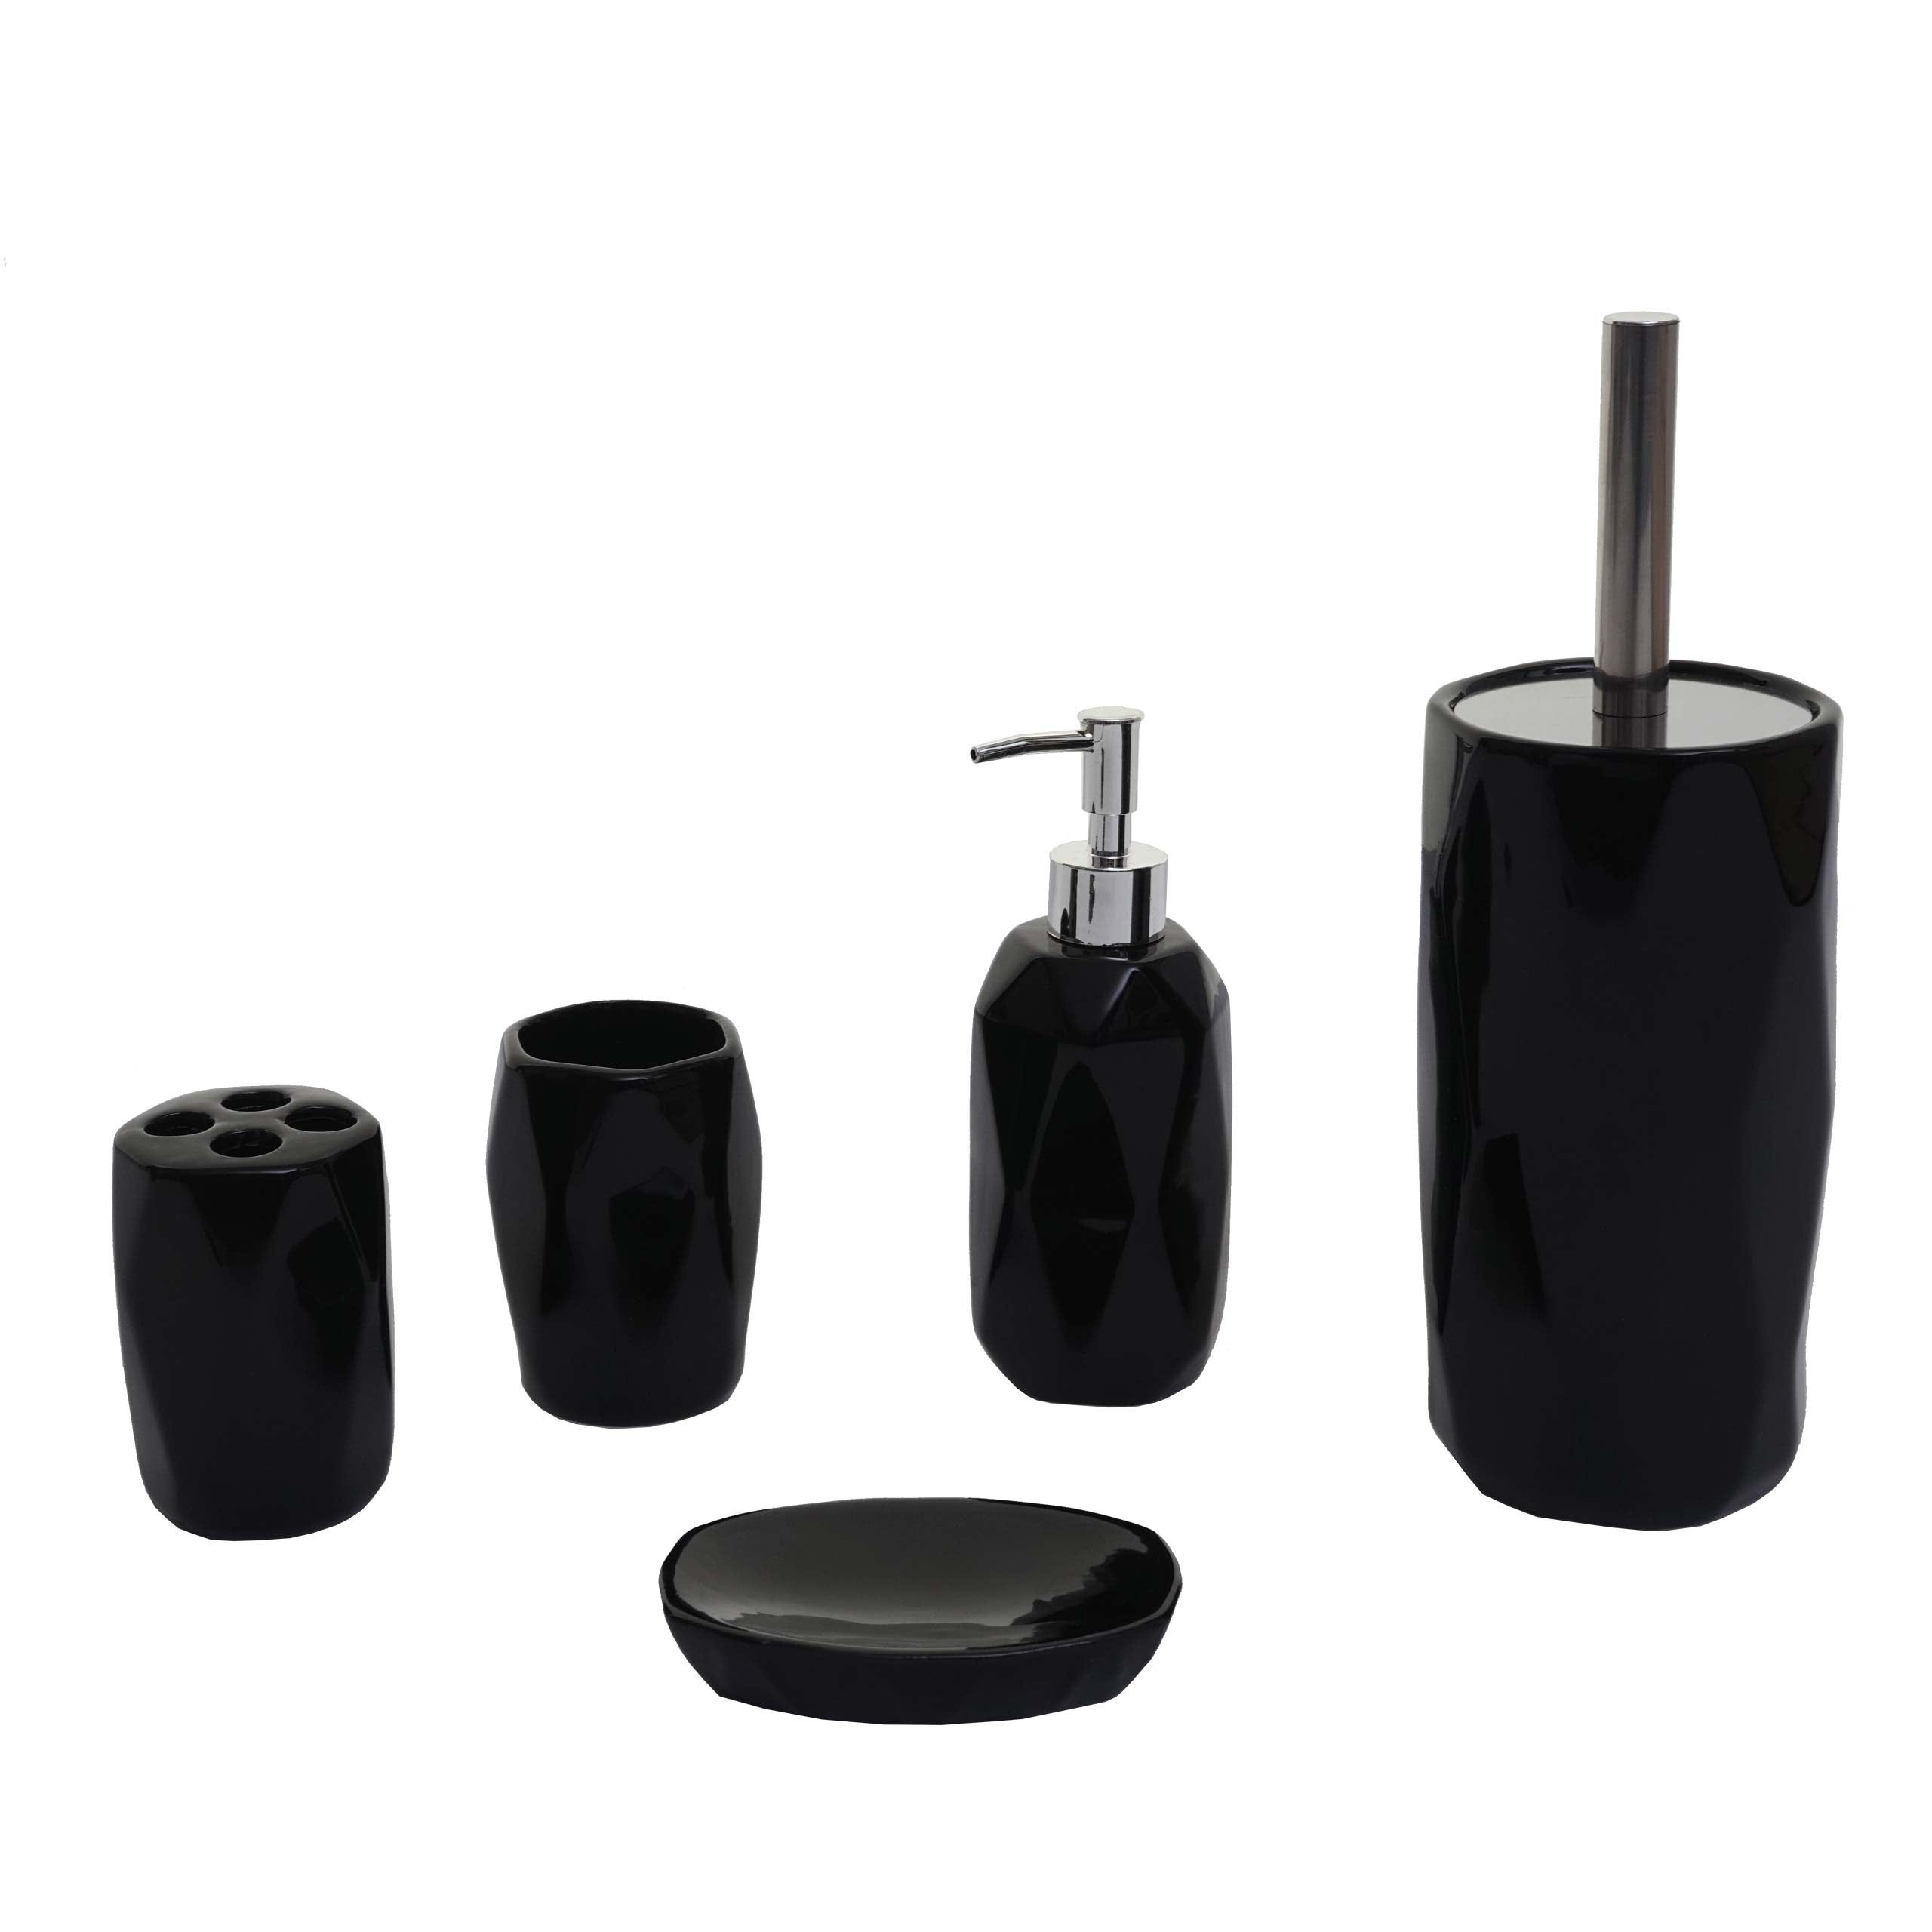 Brosse WC avec support en céramique noire et liège - Accessoires